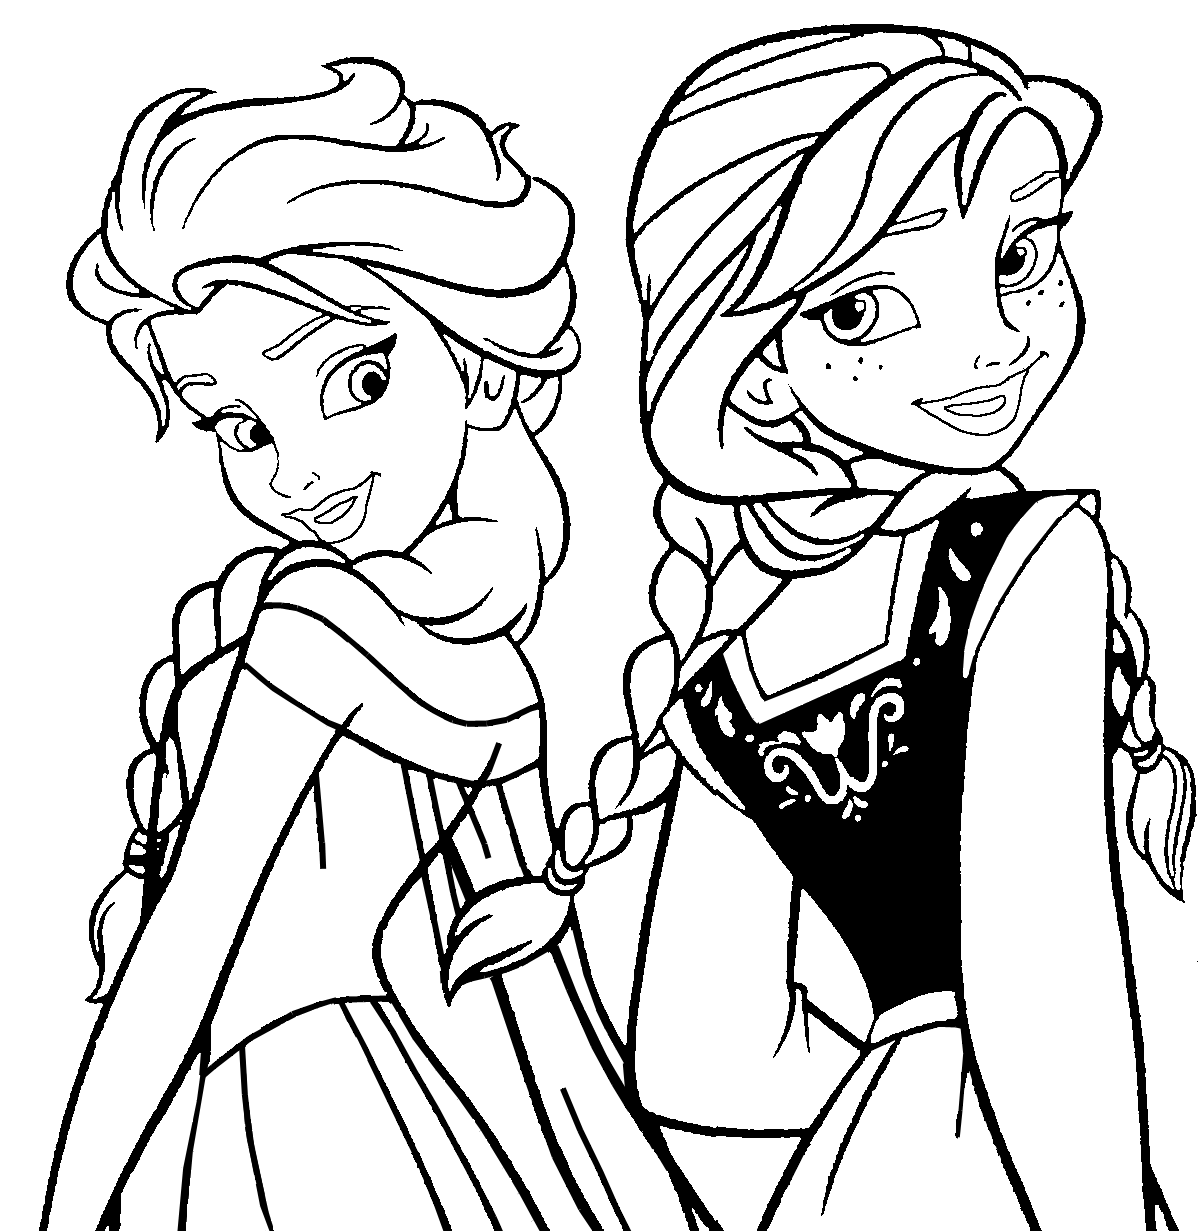 Dibujo para colorear de Elsa y Anna de la película Frozen